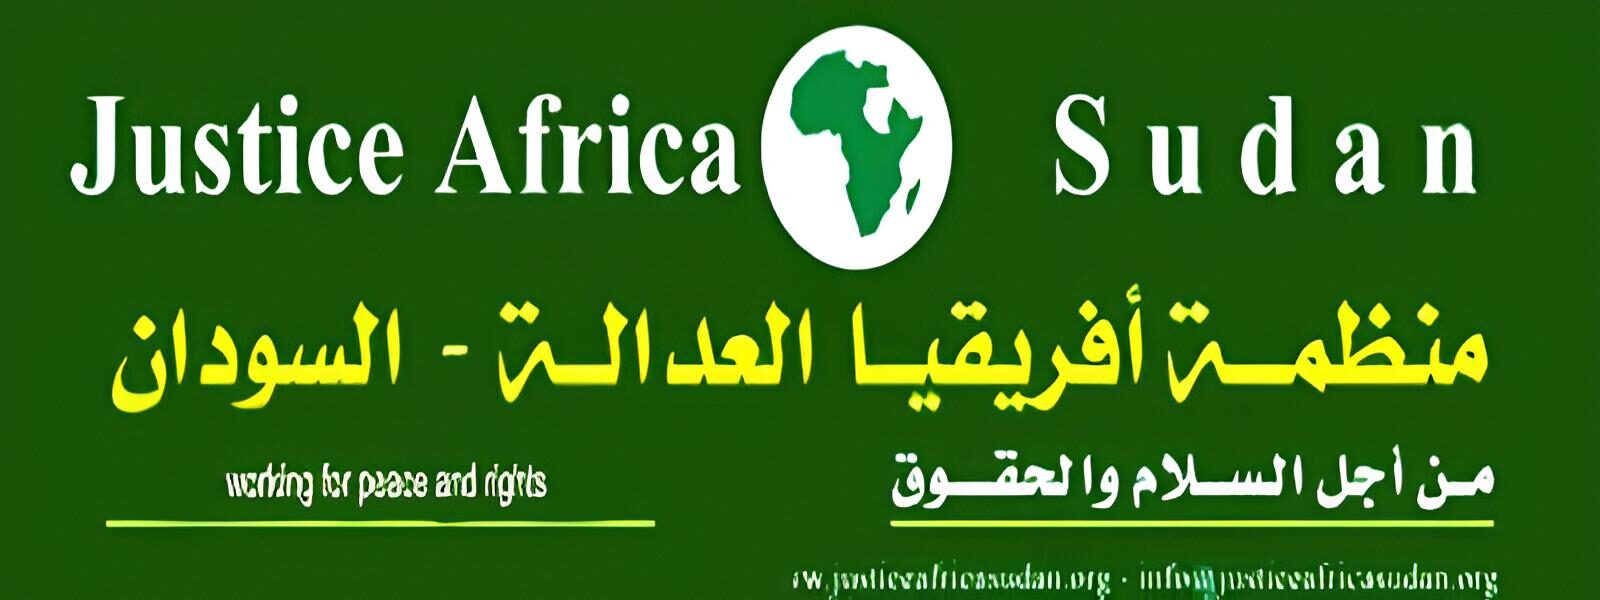 Justice Africa Sudan